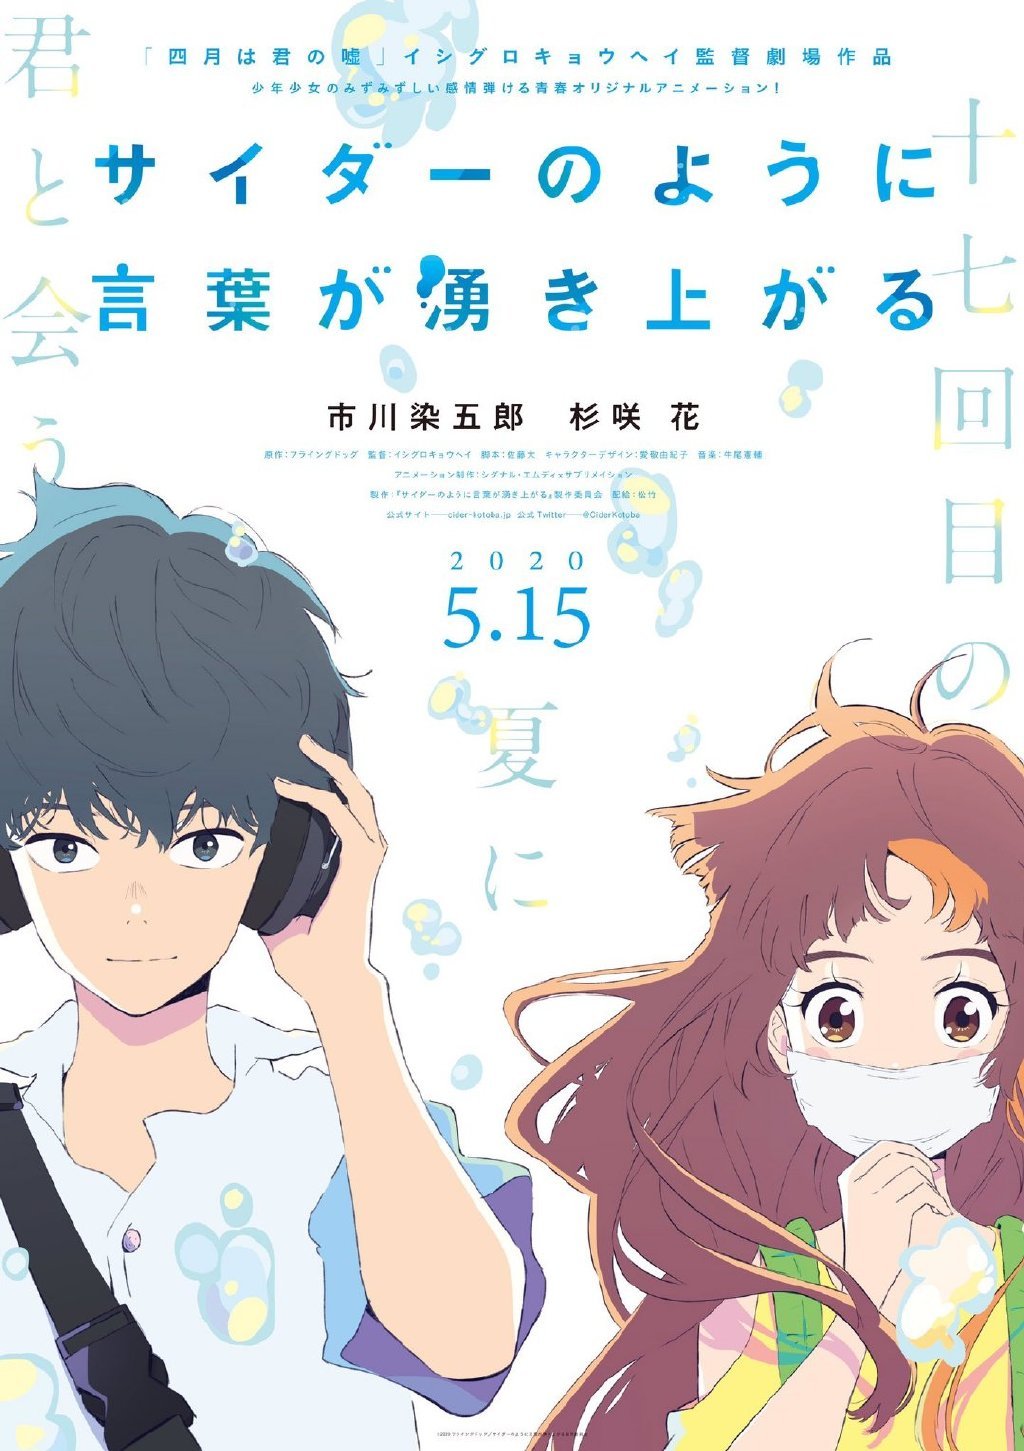 原创动画电影《言语如苏打般涌现》预告PV公开，5月15日在日本上映- ACG17.COM